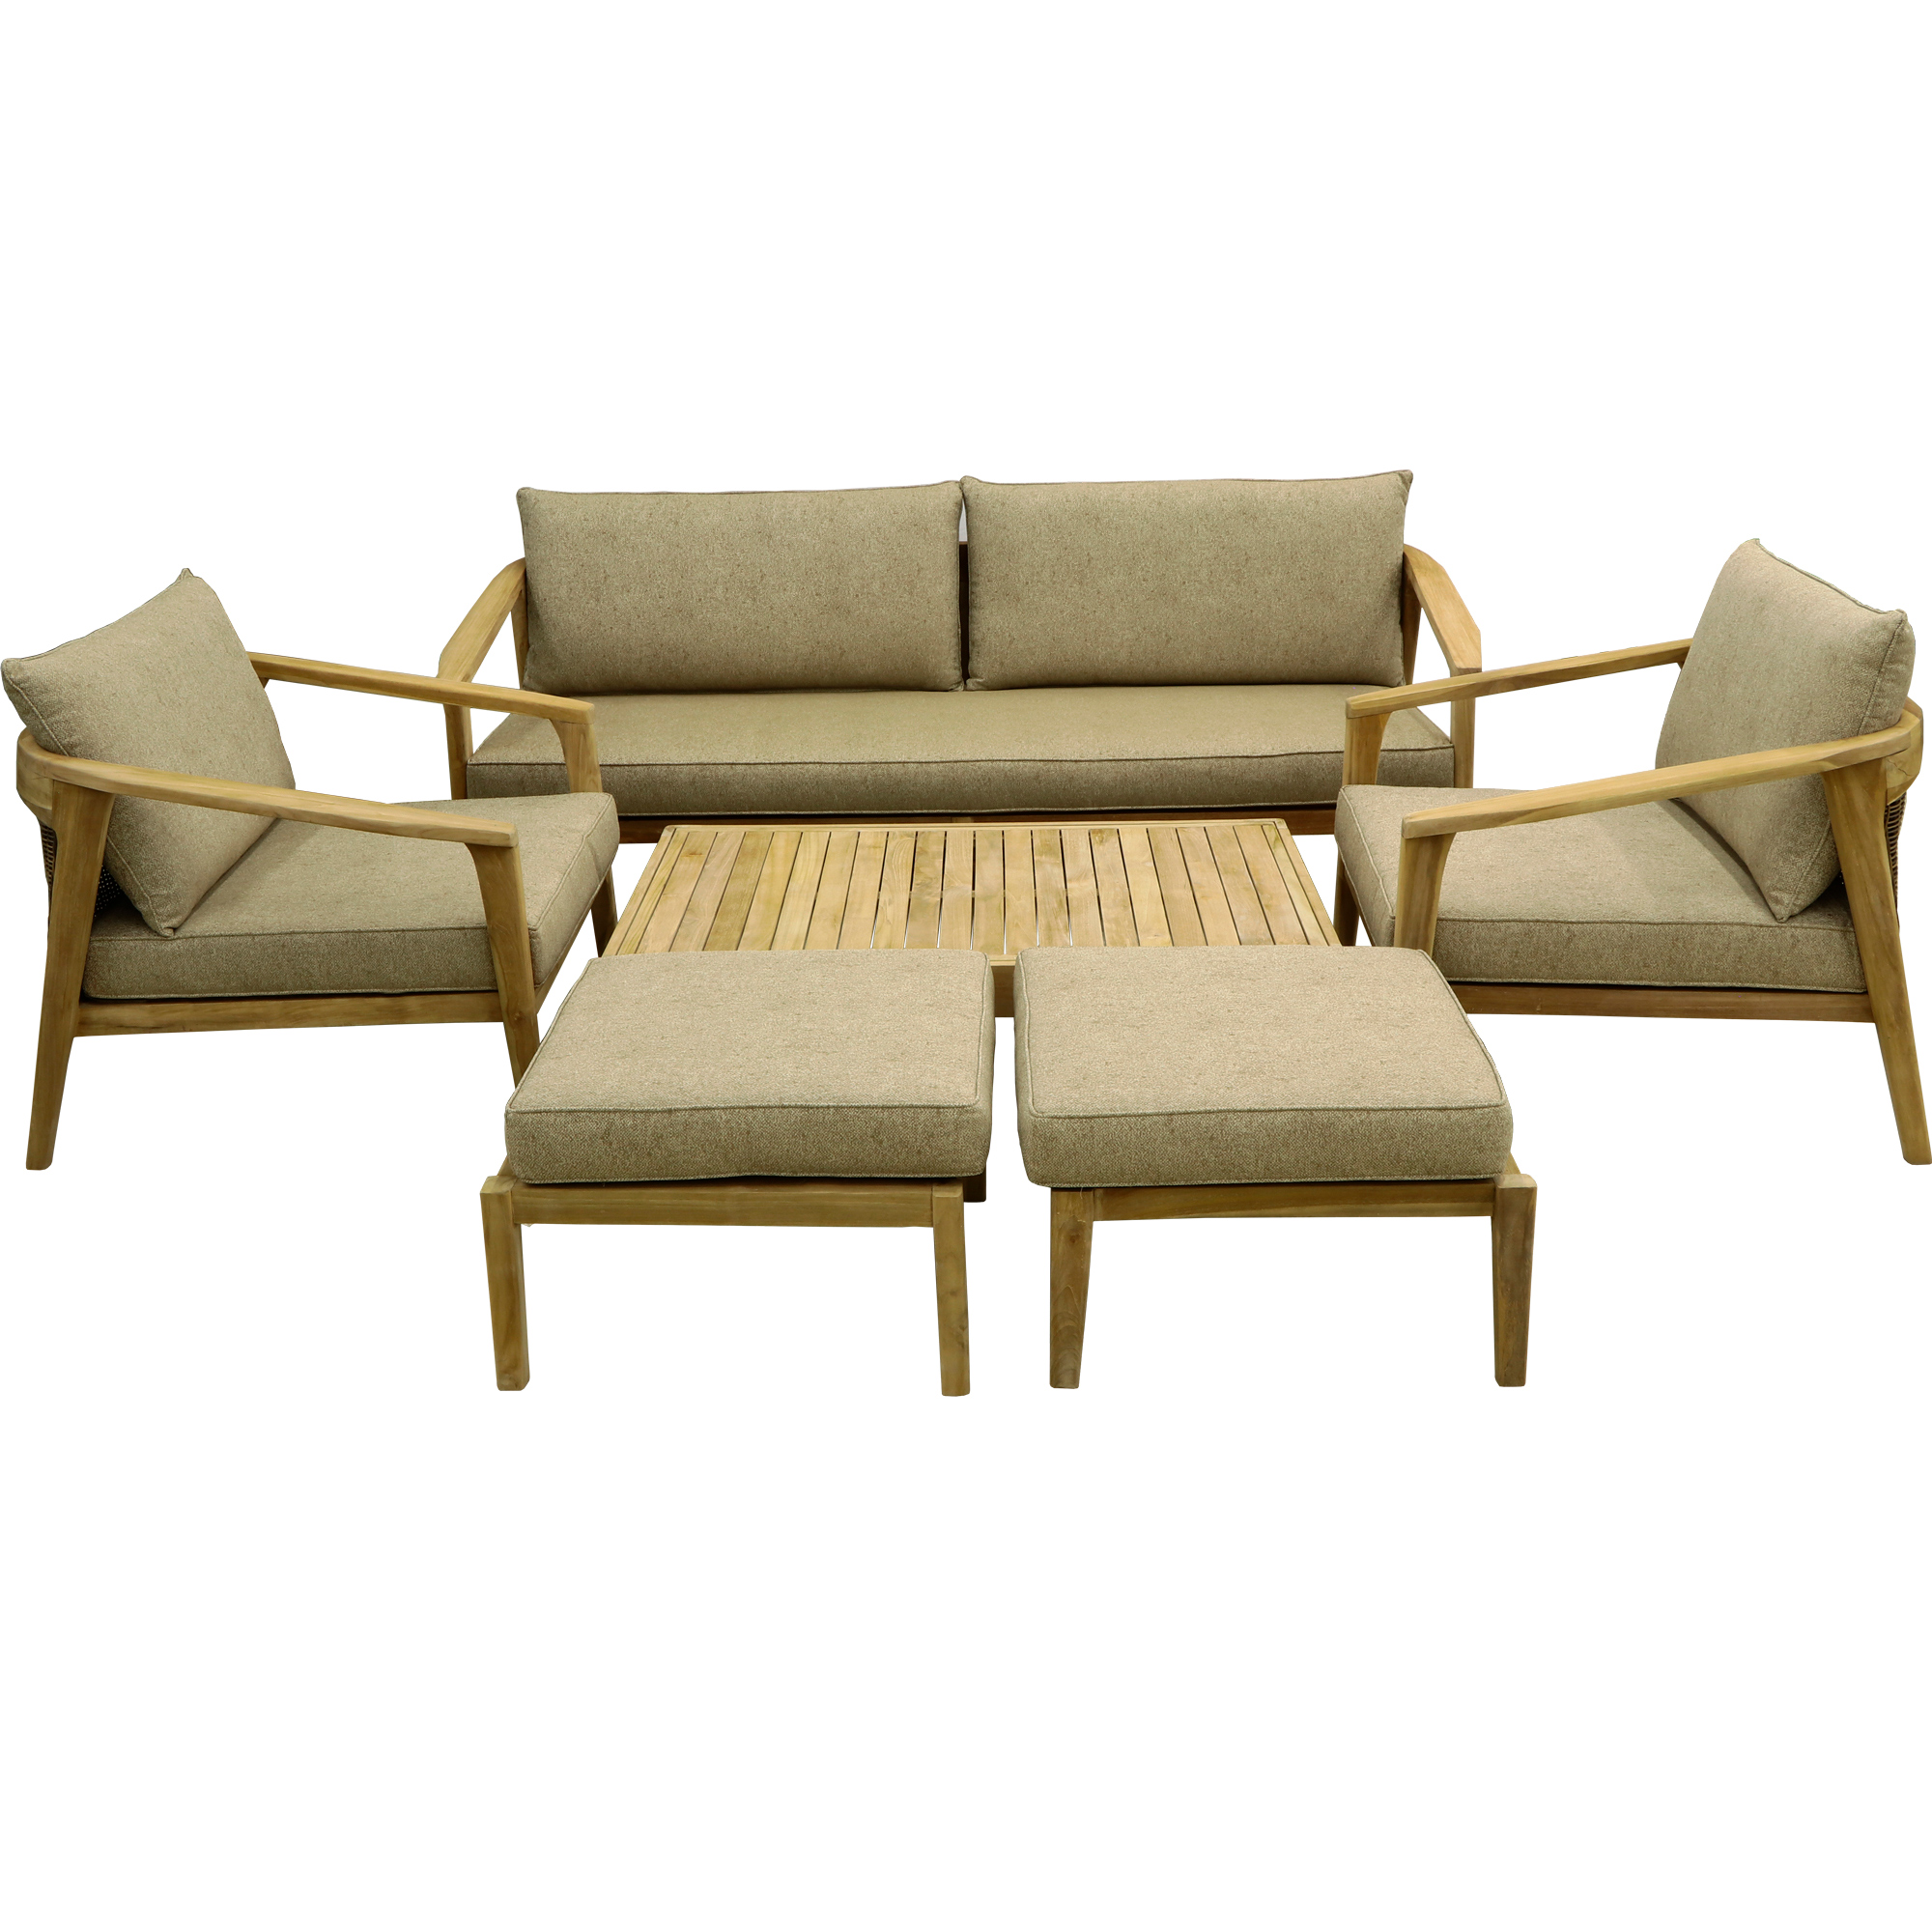 Комплект мебели Jepara Porto Cervo l 6 предметов, цвет коричневый, размер 82х210х85 - фото 1